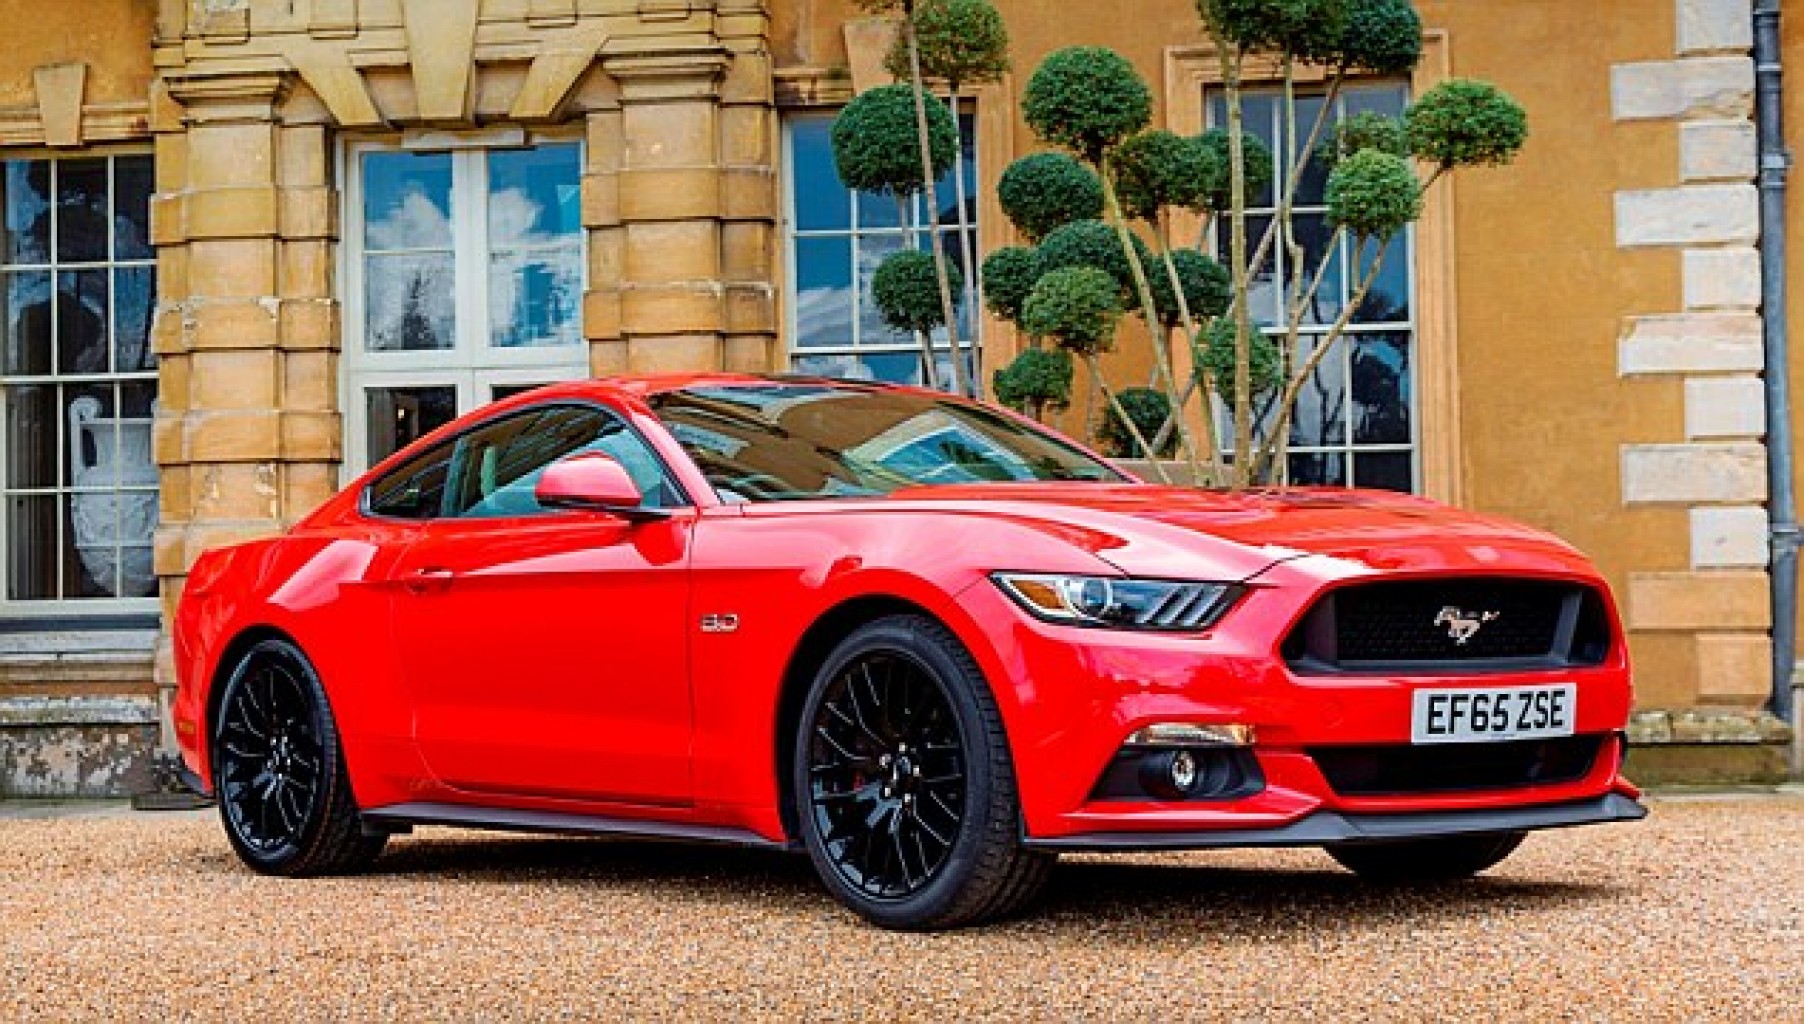 El Ford Mustang sigue siendo el líder global en ventas de autos deportivos